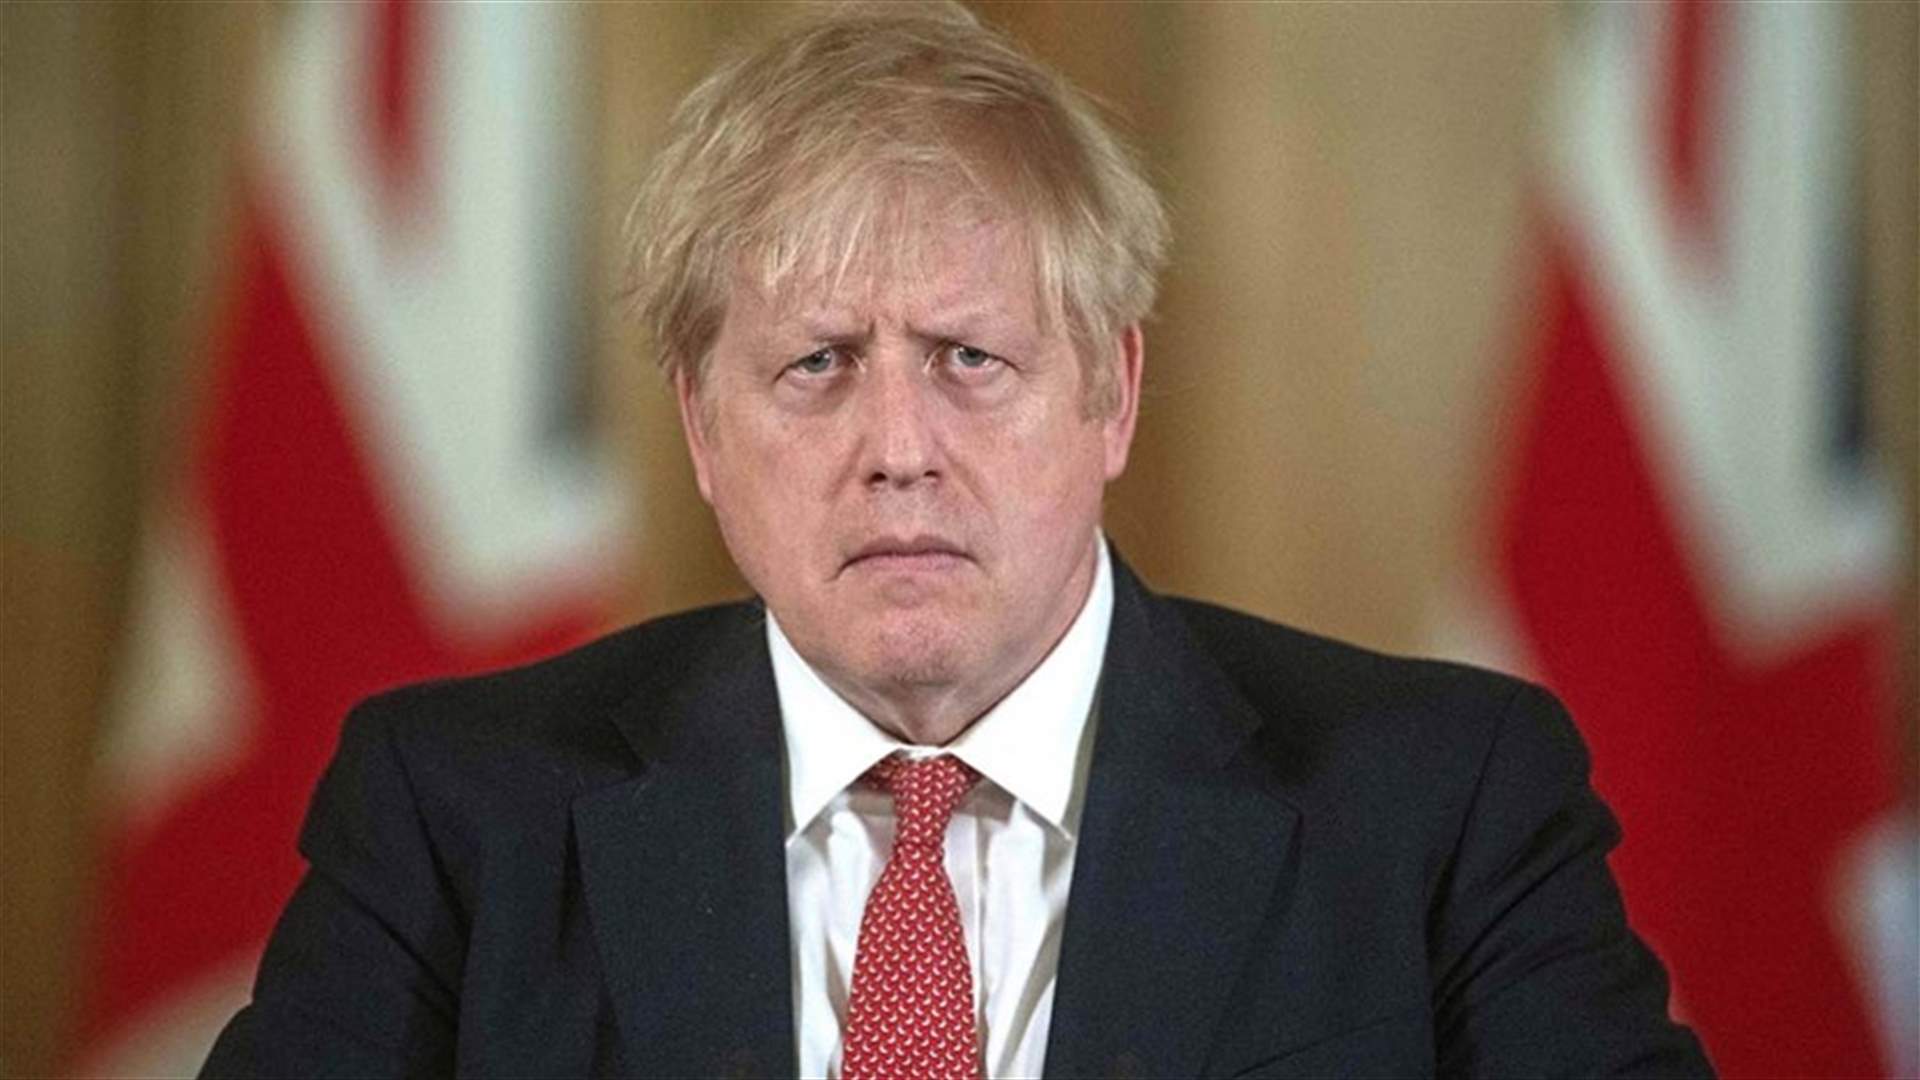 بعد تدهور أعراض إصابته بفيروس كورونا... ما جديد حالة رئيس الوزراء البريطاني؟